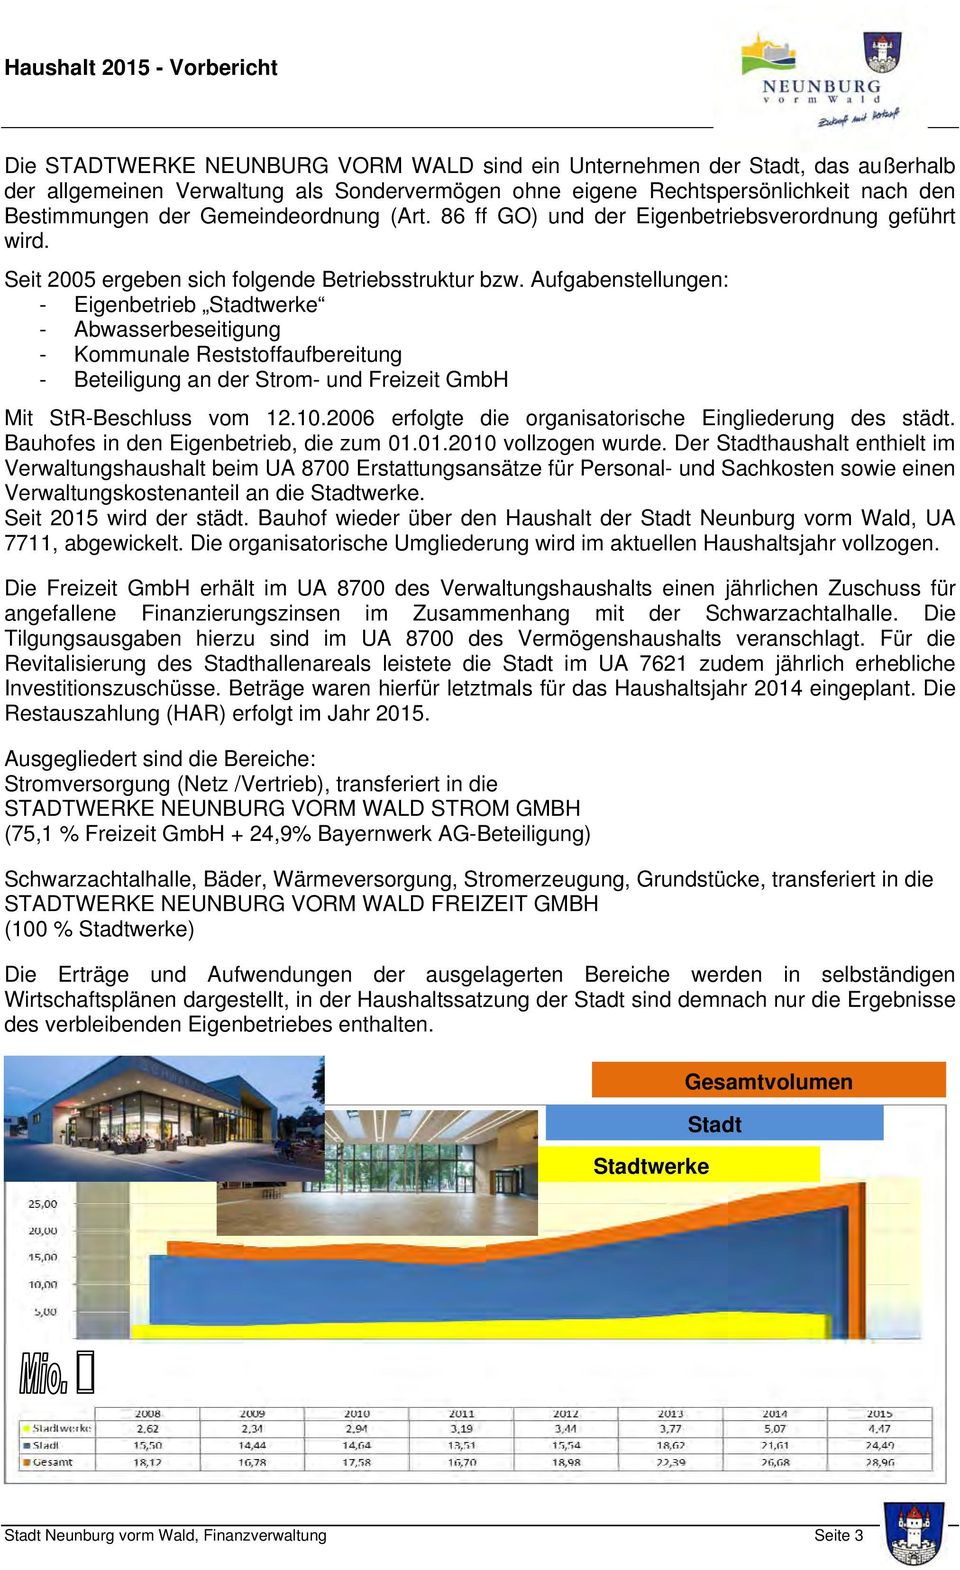 Aufgabenstellungen: - Eigenbetrieb Stadtwerke - Abwasserbeseitigung - Kommunale Reststoffaufbereitung - Beteiligung an der Strom- und Freizeit GmbH Mit StR-Beschluss vom 12.10.